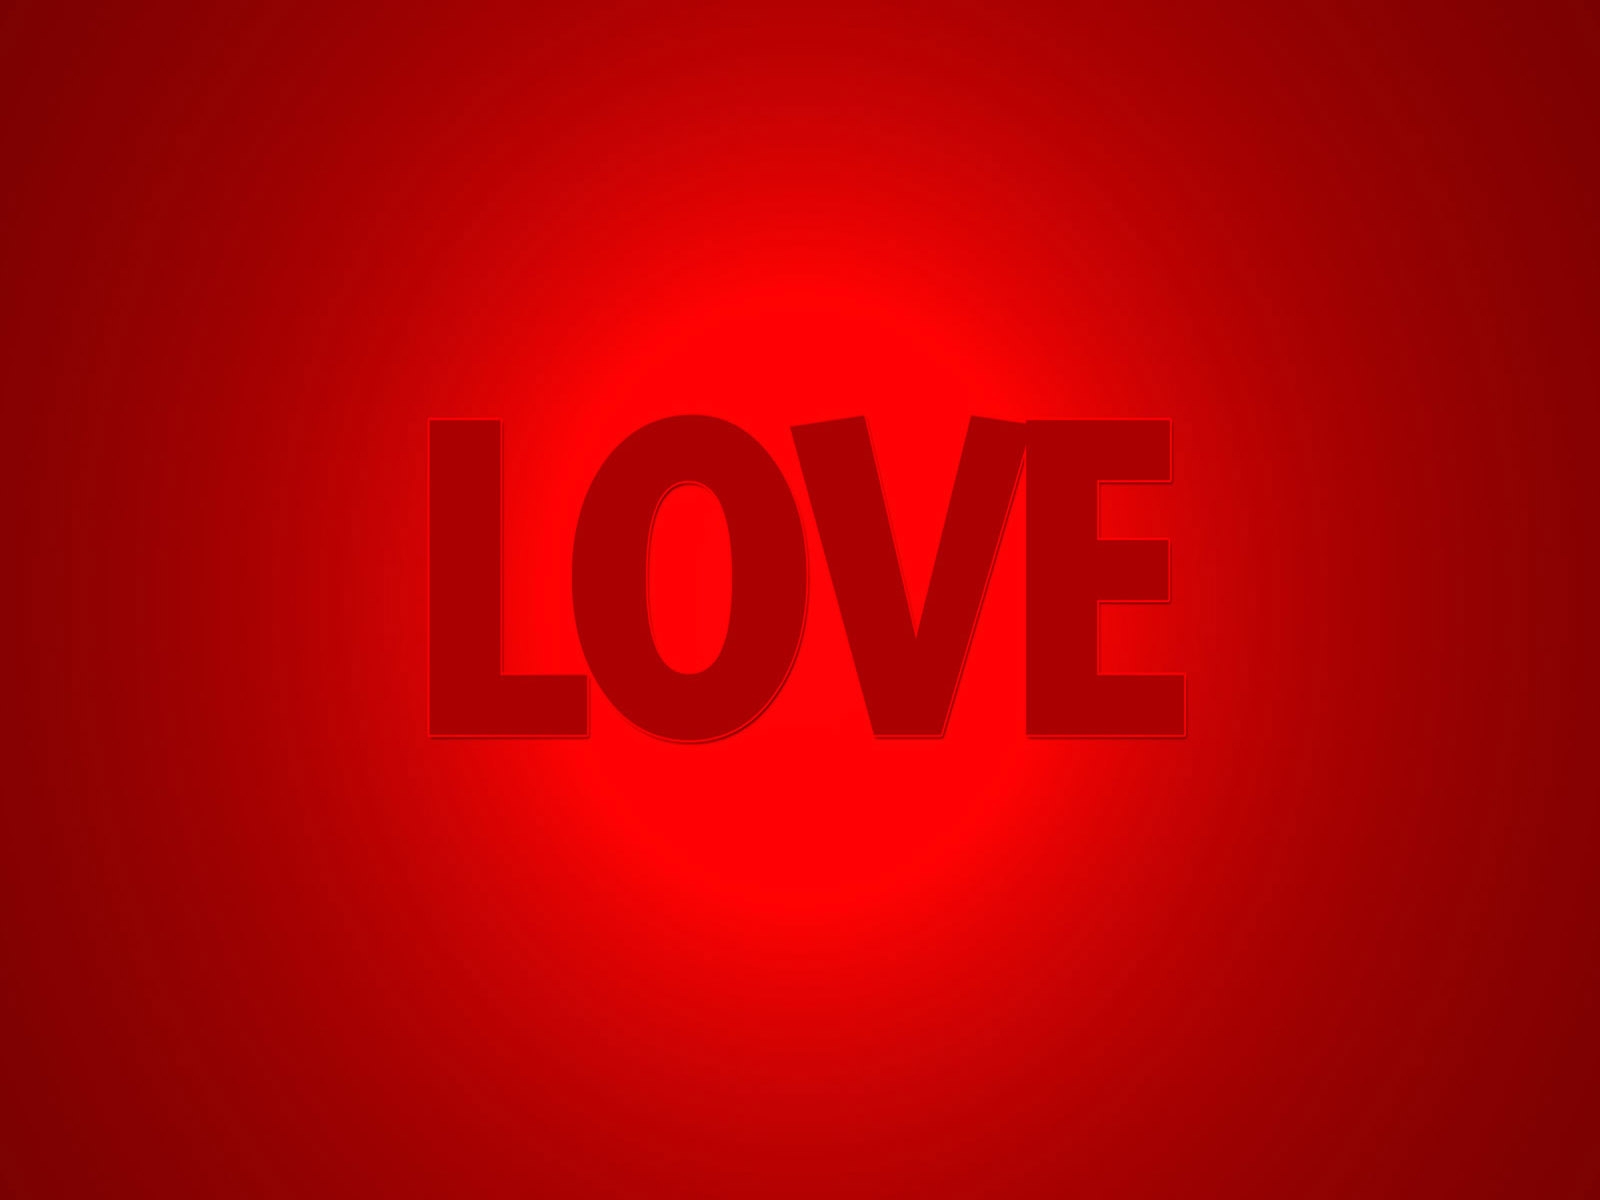 Fondos Rojo con la palabra Love